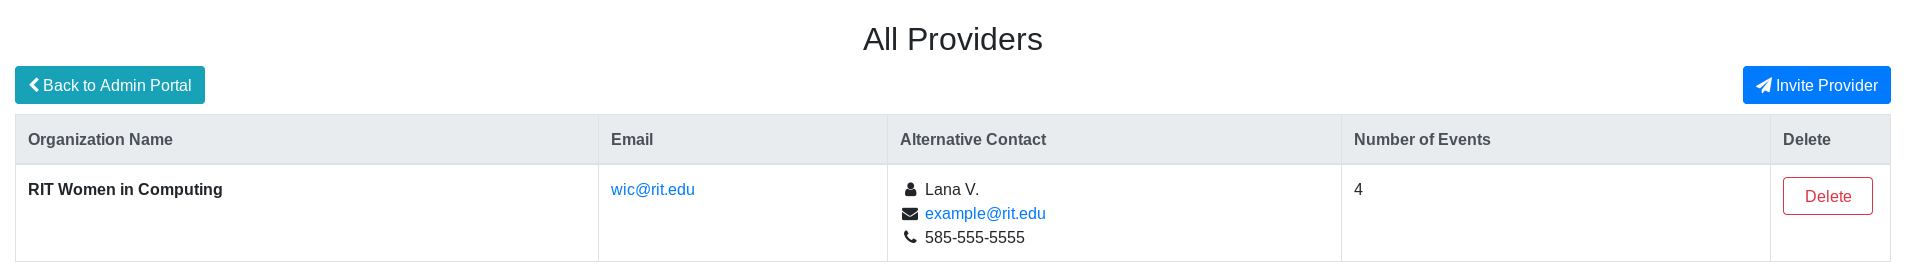 'All Providers' page, including 'Invite Provider' button